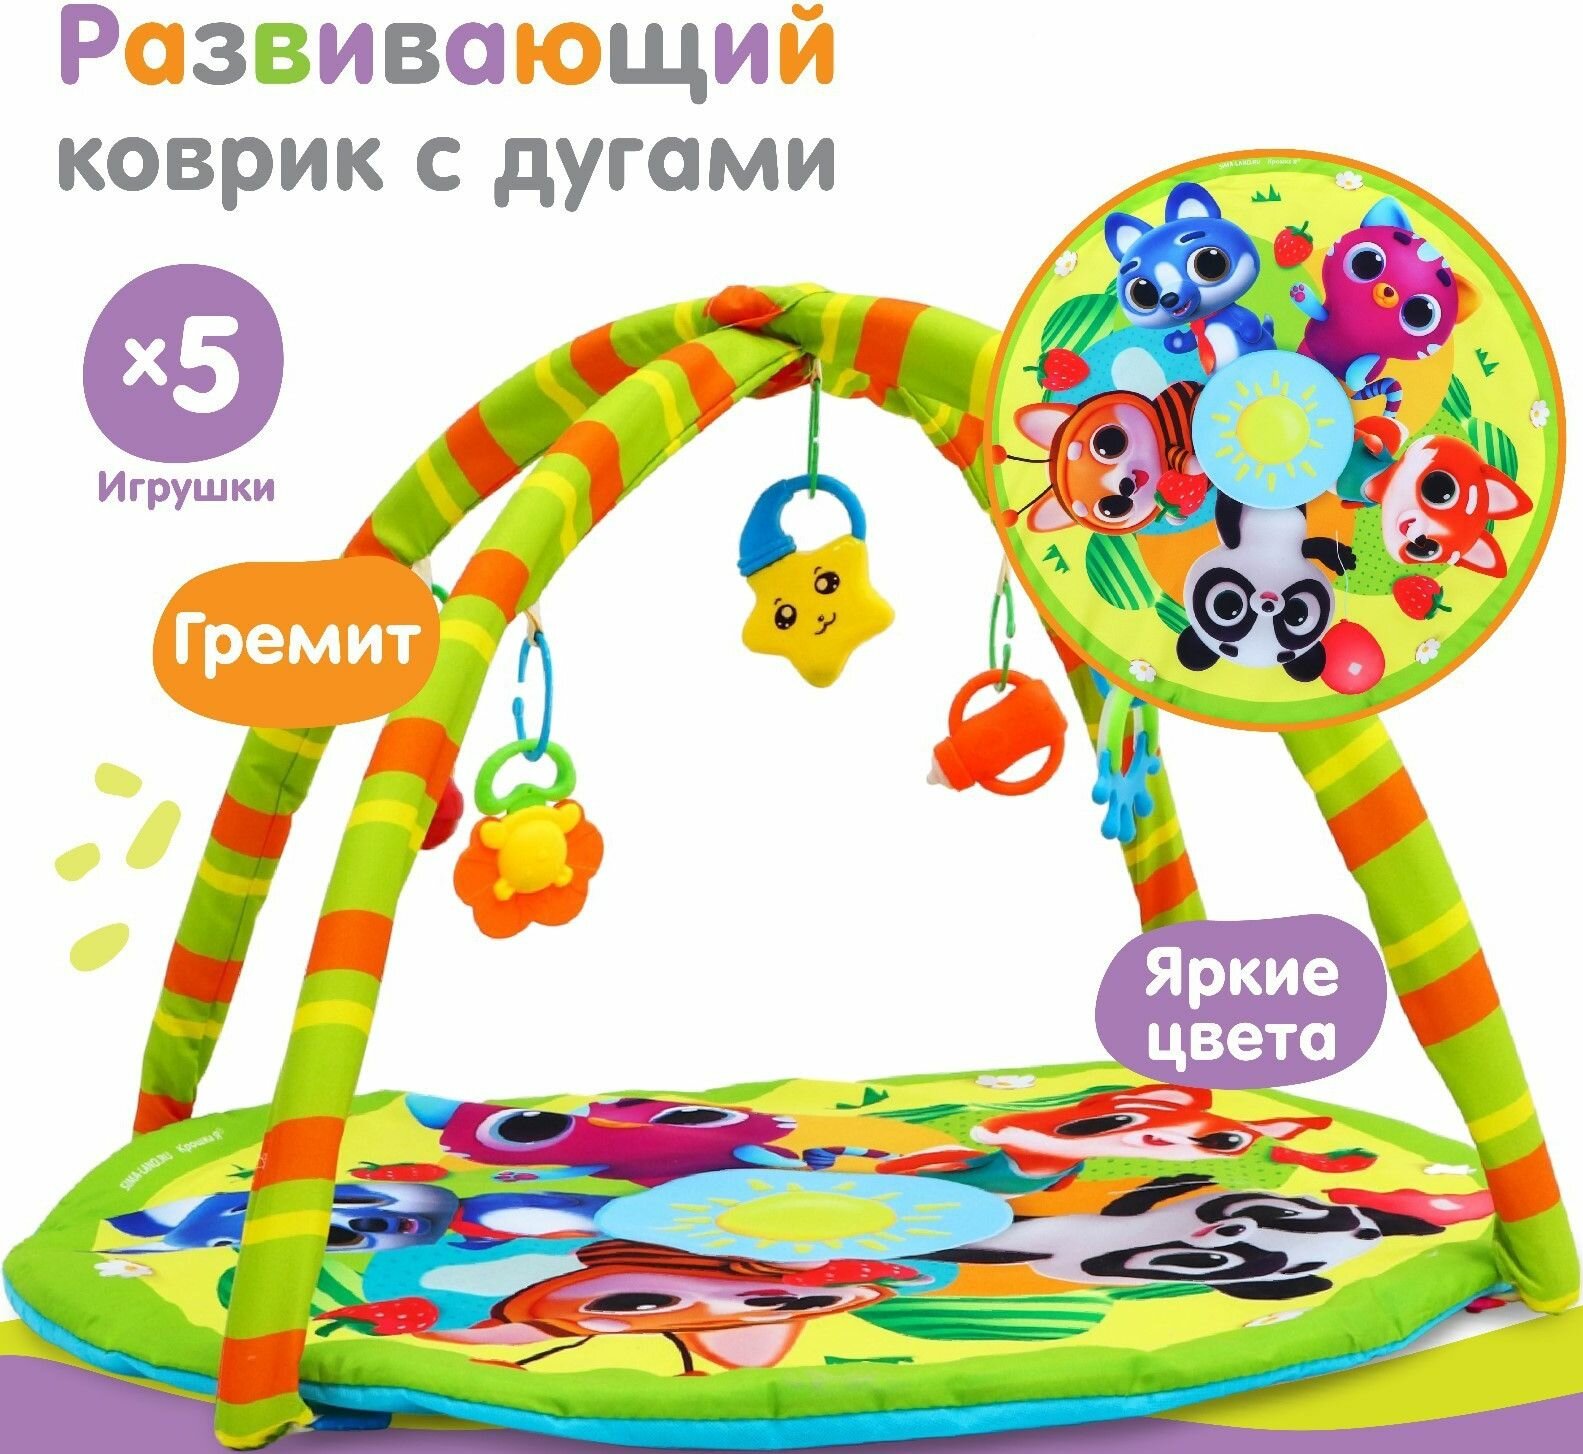 Детский коврик с дугами "Весёлые малыши" круглый, развивающее пространство для малышей, мягкая игровая подстилка для дома и улицы, 5 игрушек в комплекте, 85х85 см